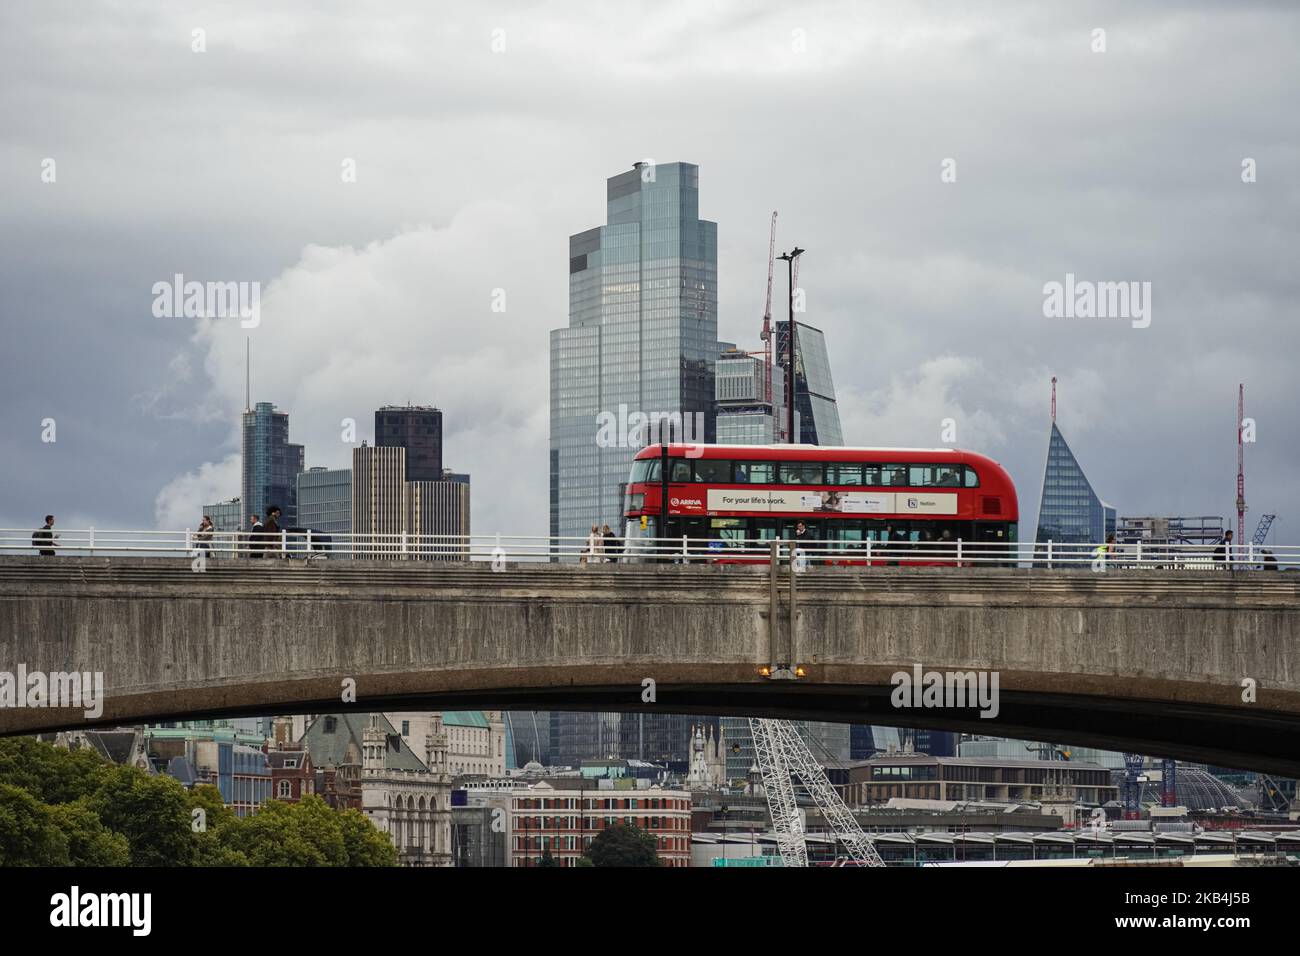 Bus sur le pont de Waterloo avec les gratte-ciels de la City de Londres en arrière-plan, Londres Angleterre Royaume-Uni Banque D'Images